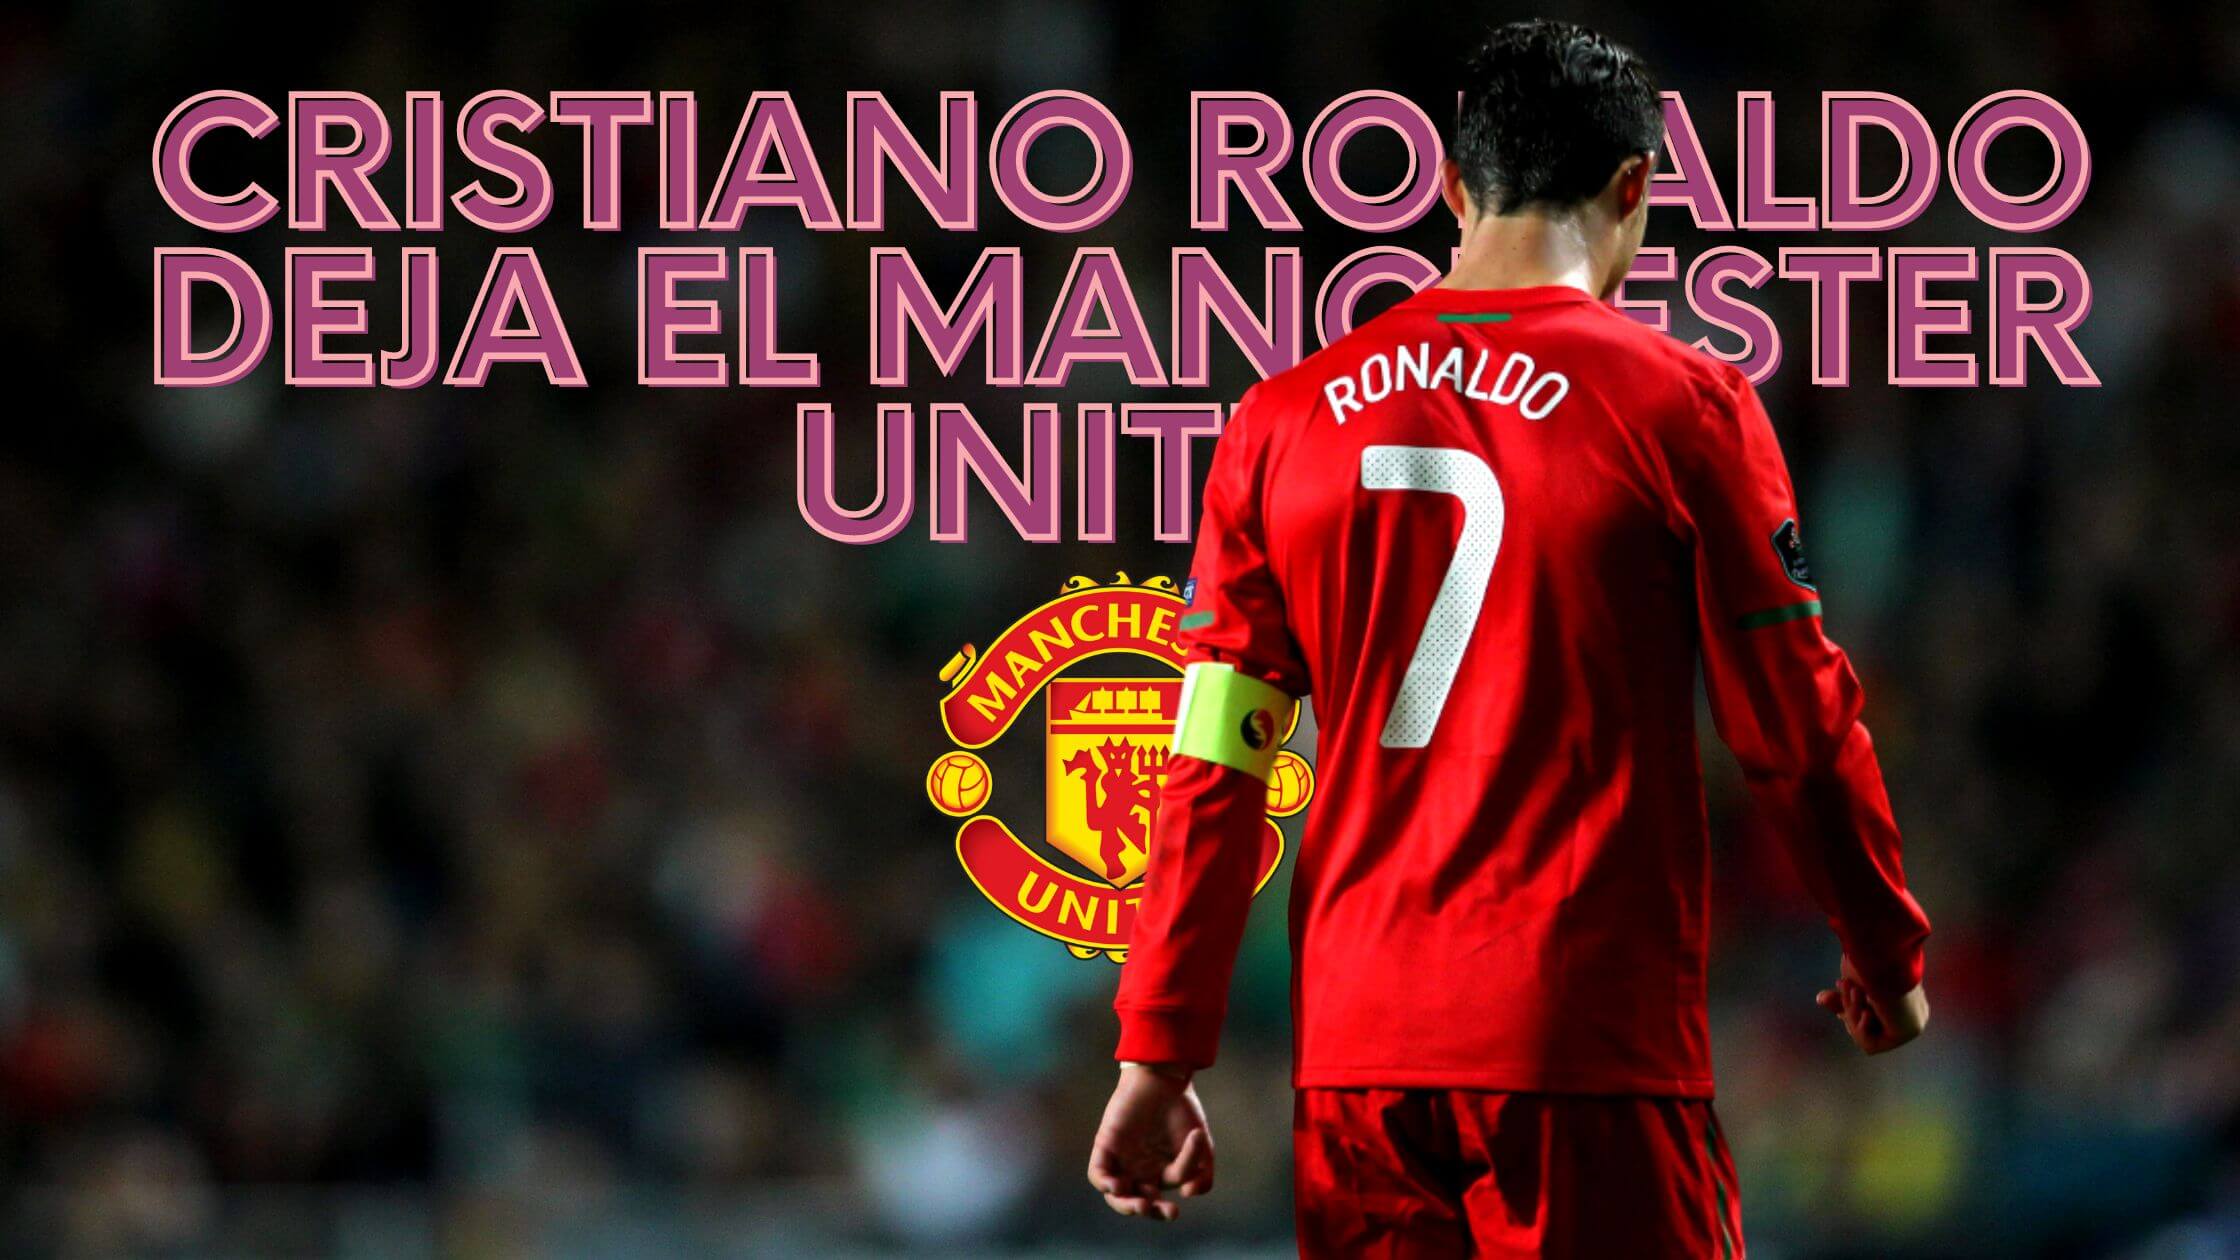 Cristiano Ronaldo deja el Manchester United renuncia de comun acuerdo 2